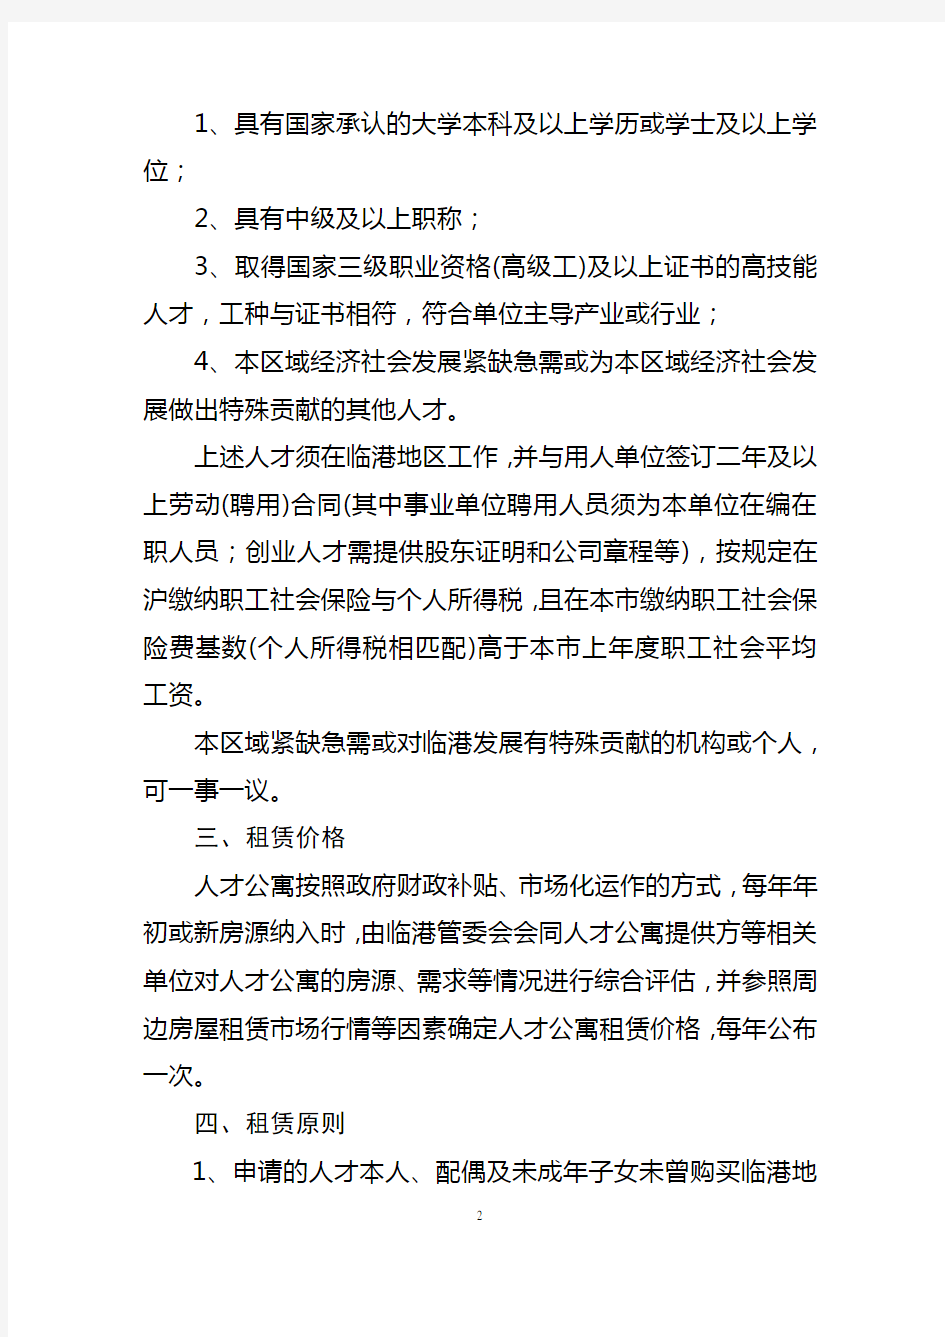 上海市临港主城区人才公寓管理暂行办法